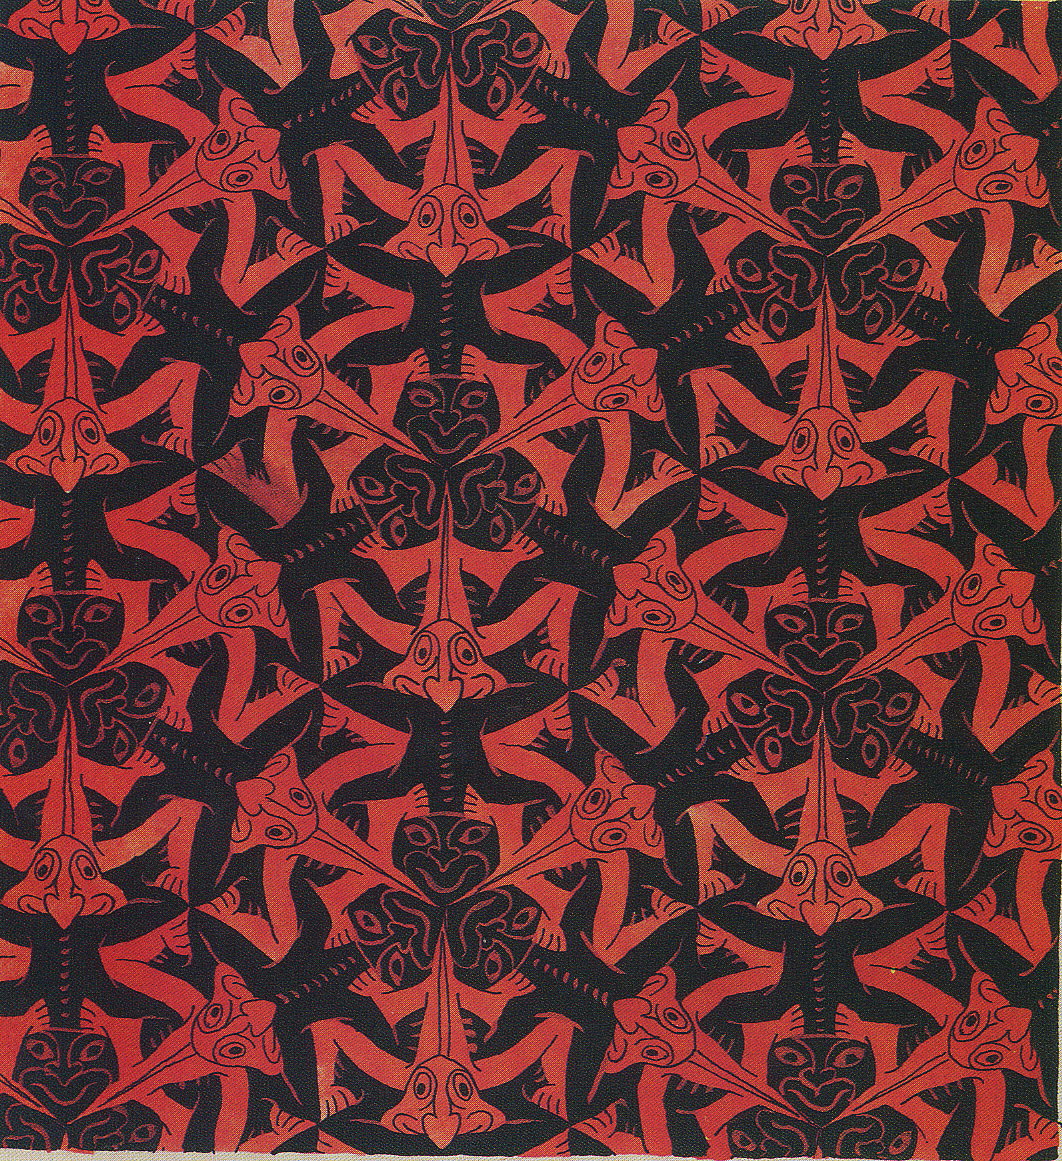 Escher S Symmetry Prints From M C Official Website